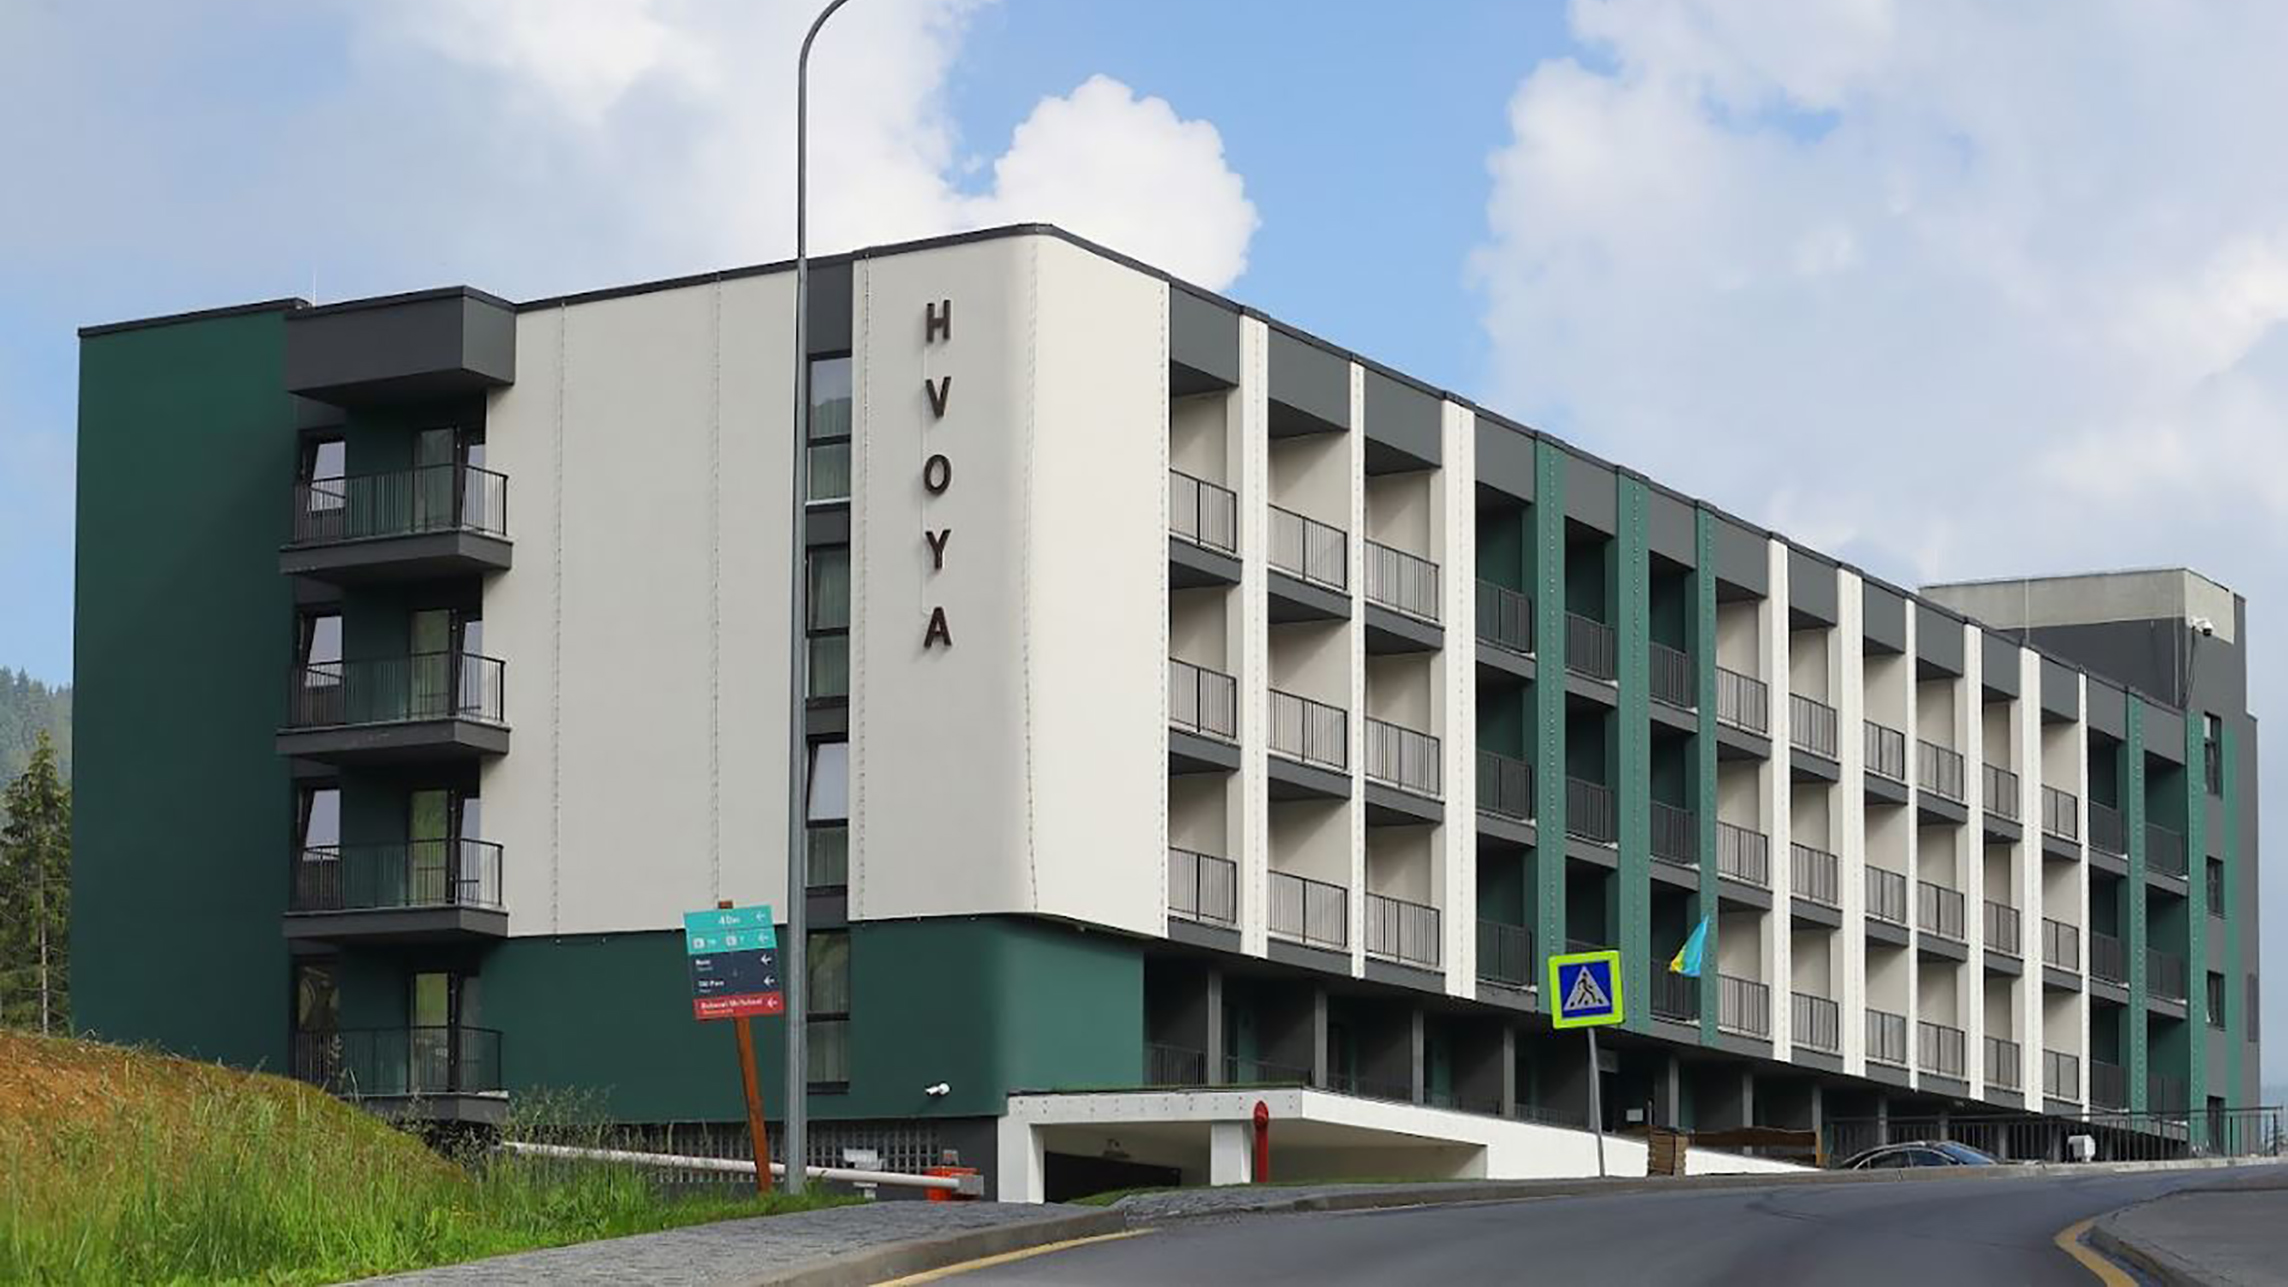 Hotel-Hvoya-1